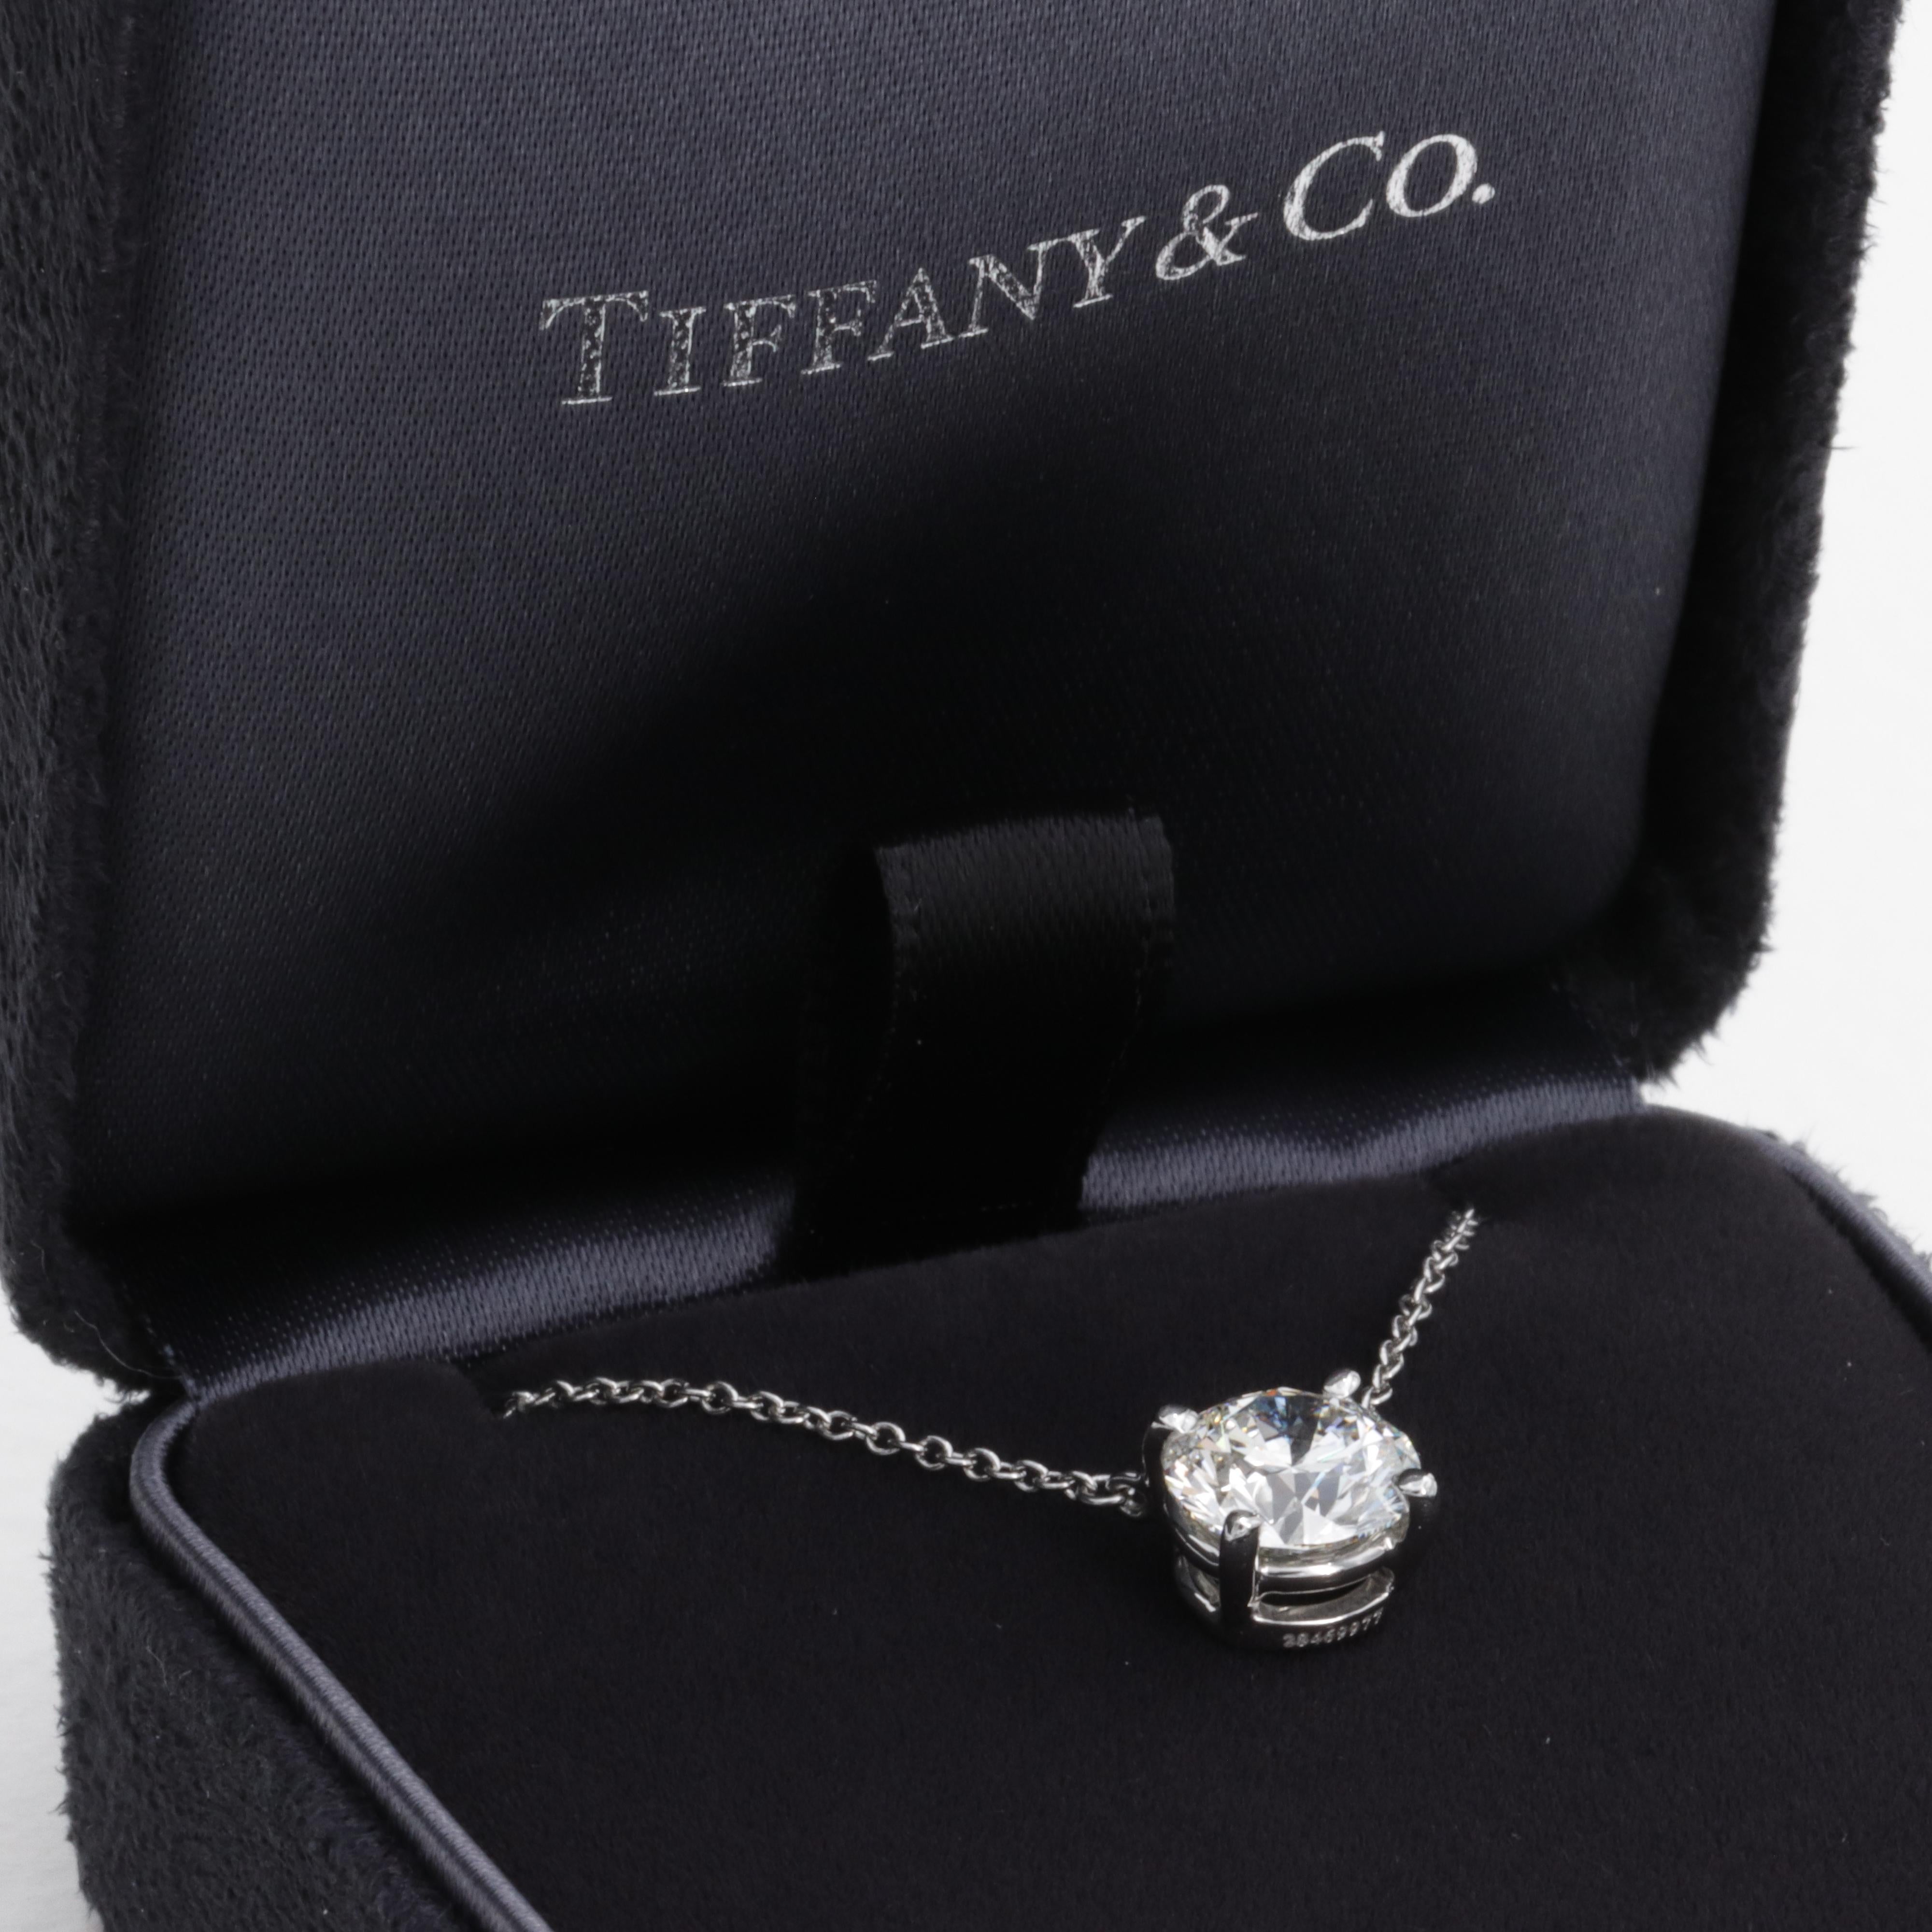 Ce collier solitaire en diamant naturel de Tiffany & Co. est composé d'un diamant rond de taille brillant de 1,63 carat de couleur I et de pureté VVS2. 

Le diamant est serti de façon experte dans sa monture originale en platine Tiffany & Co. de